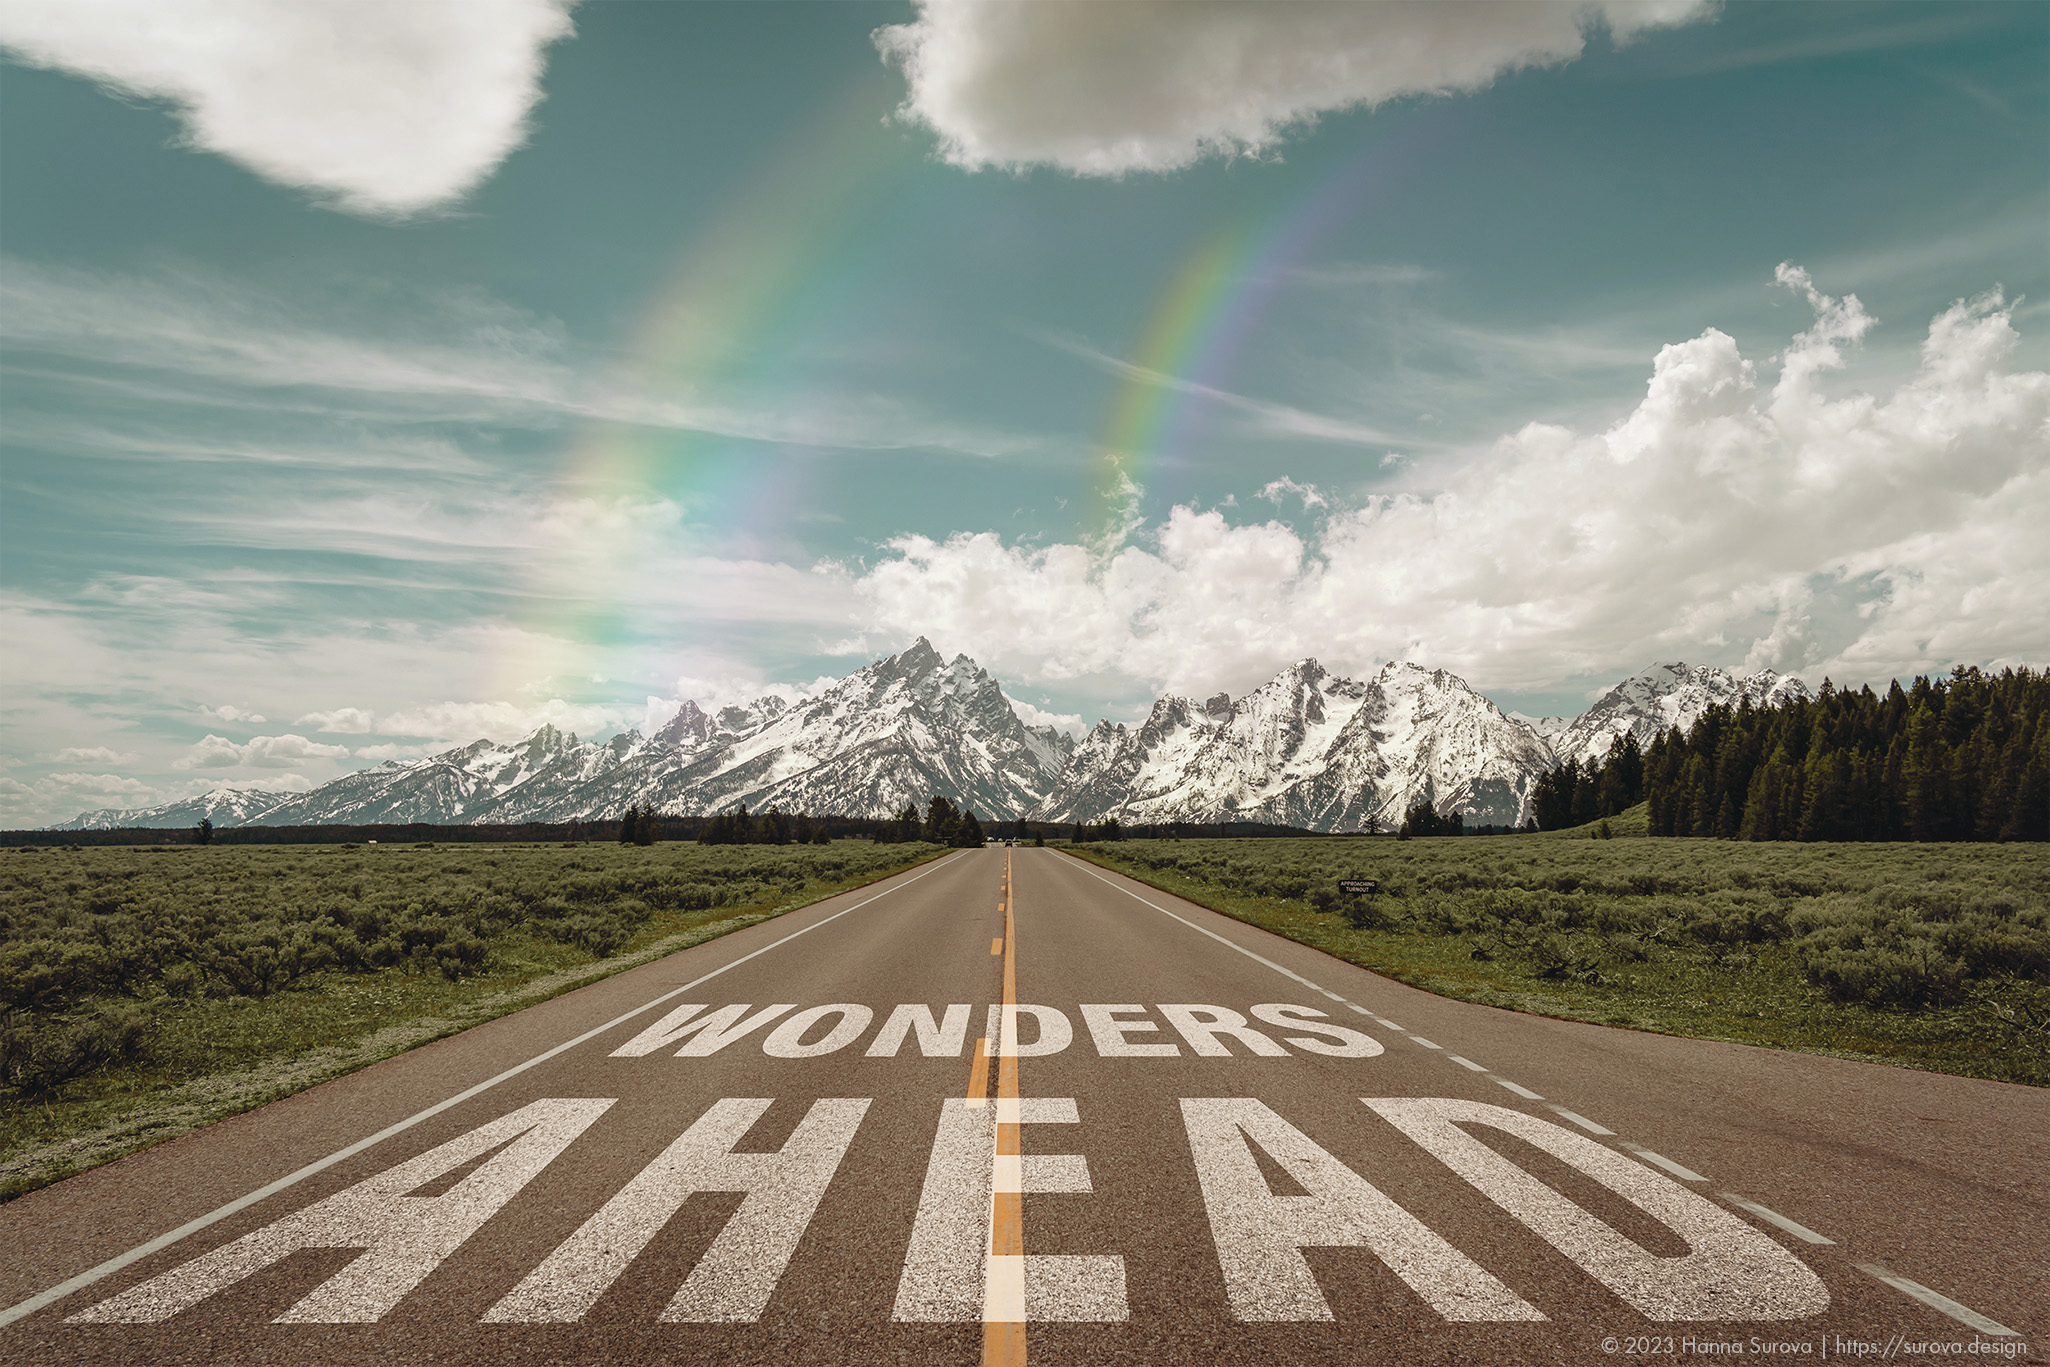 Wonders Ahead on Highway